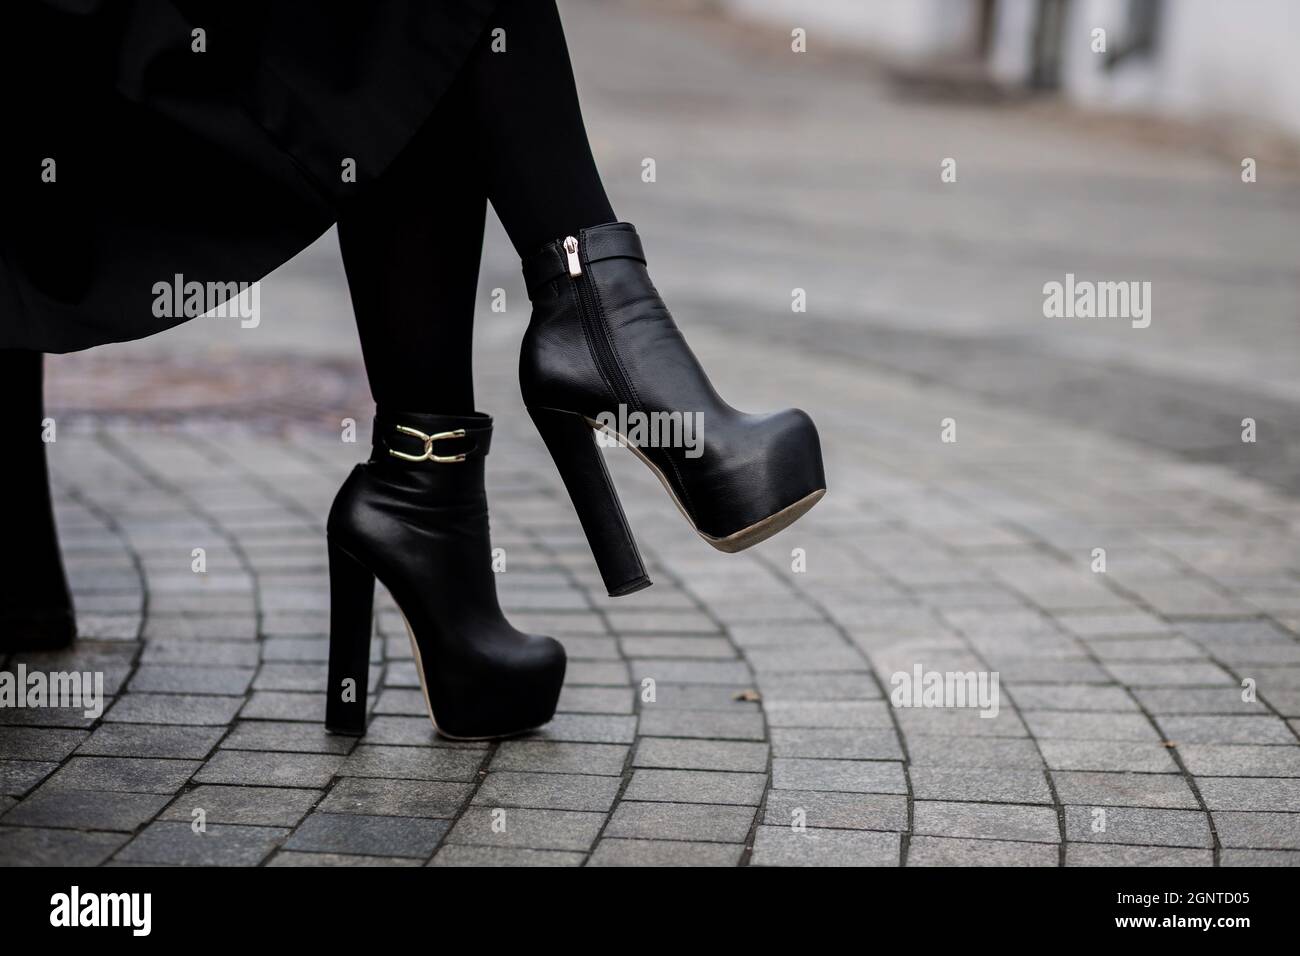 Botines de Mujer Elegantes Botas Zapatos de Tacón Bajo a la Rodilla de Moda Alto 